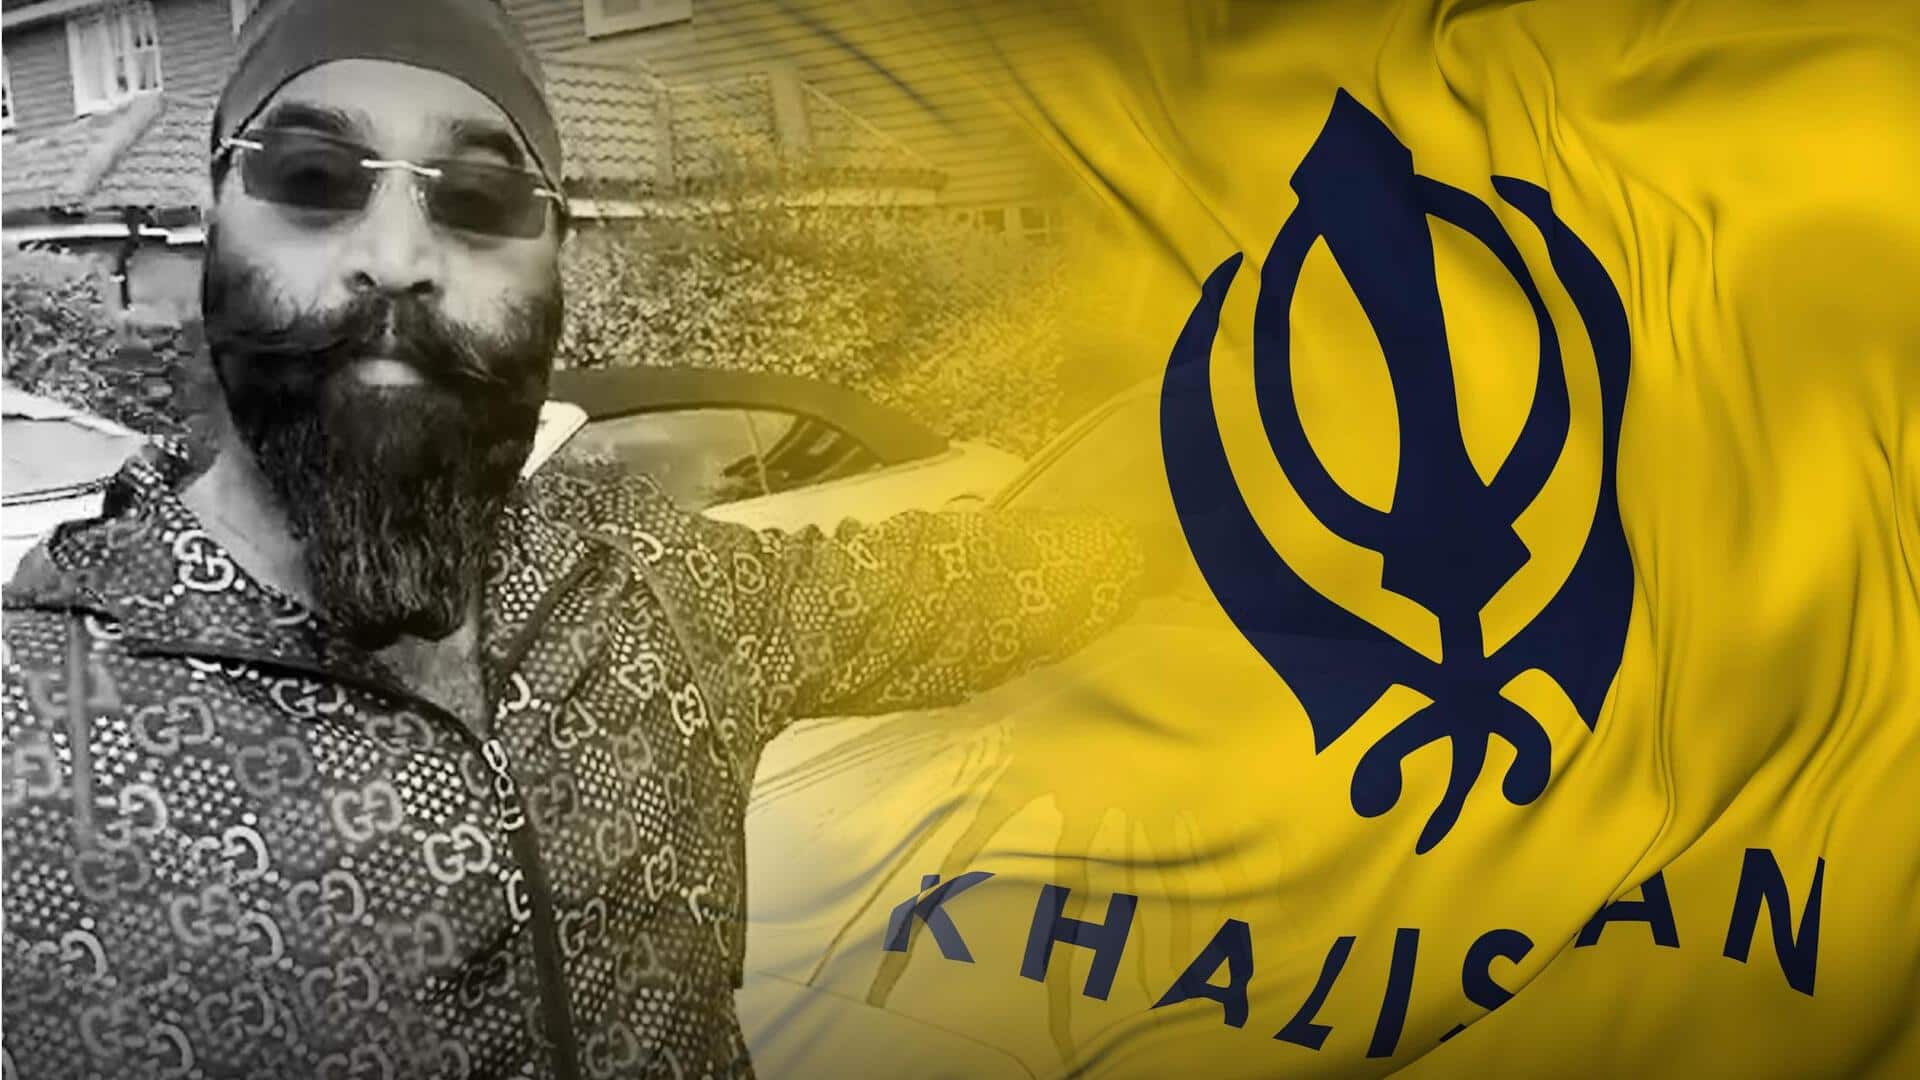 Khalistanis tortured me, UK police took no action: Sikh businessman